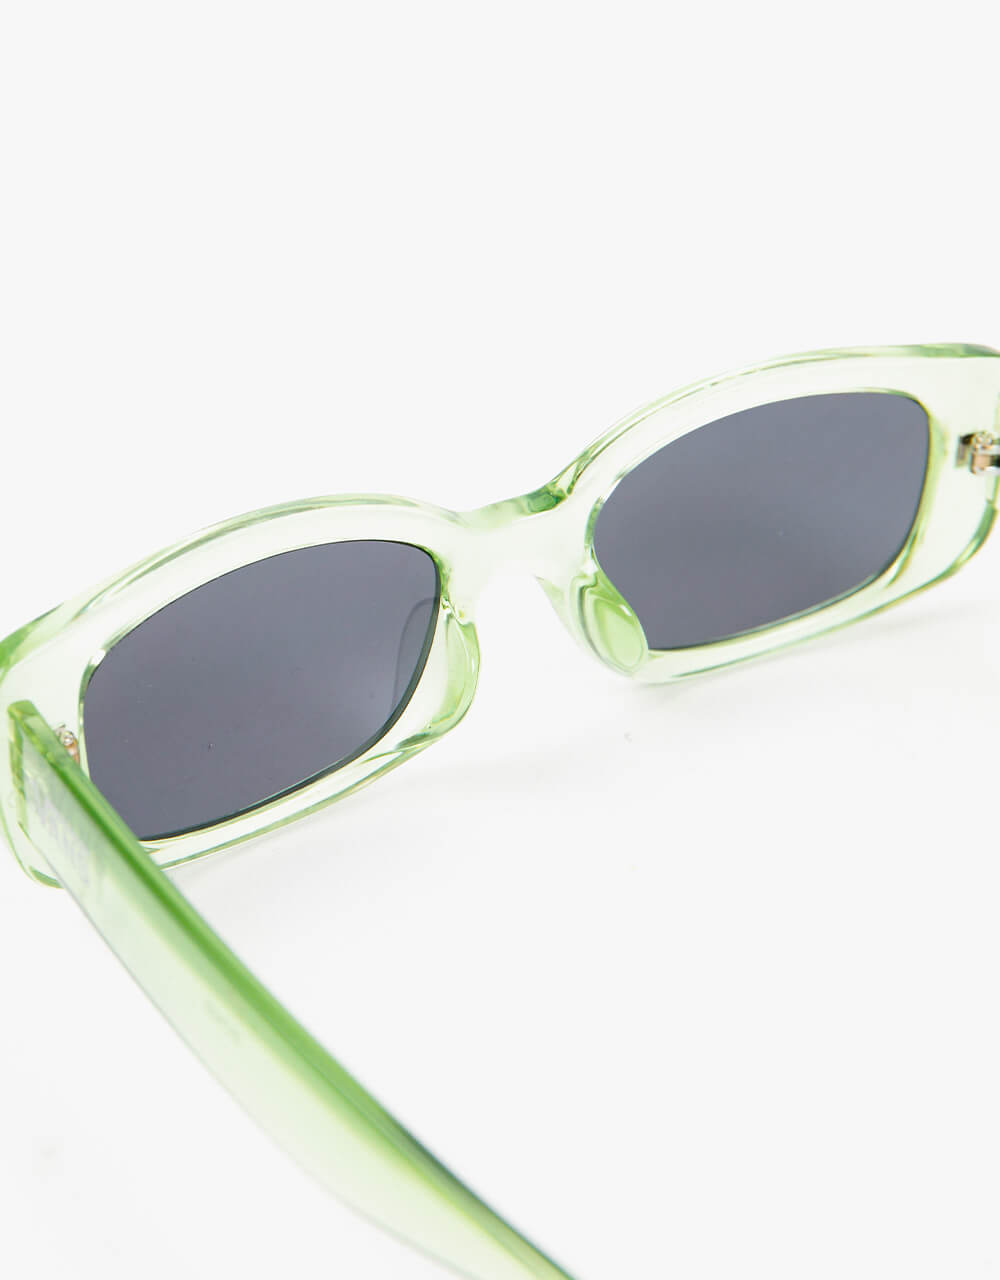 Vans Bomb Sunglasses - Celadon Green